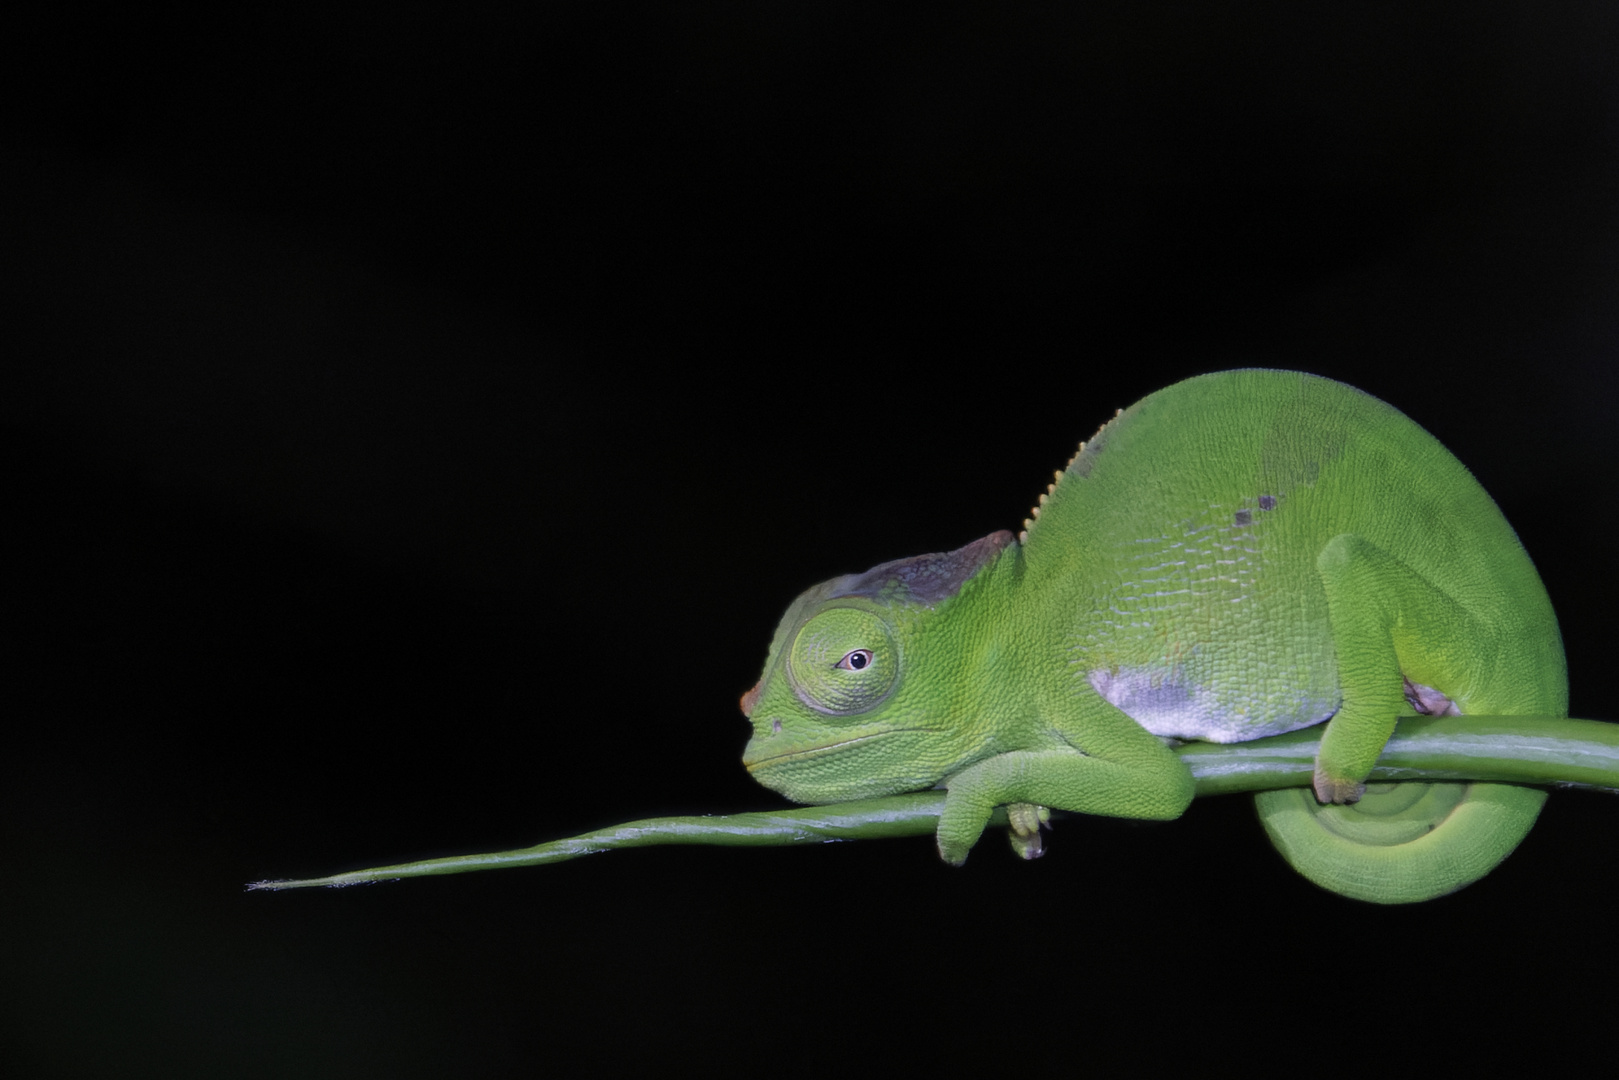 Usambara two-horned chameleon